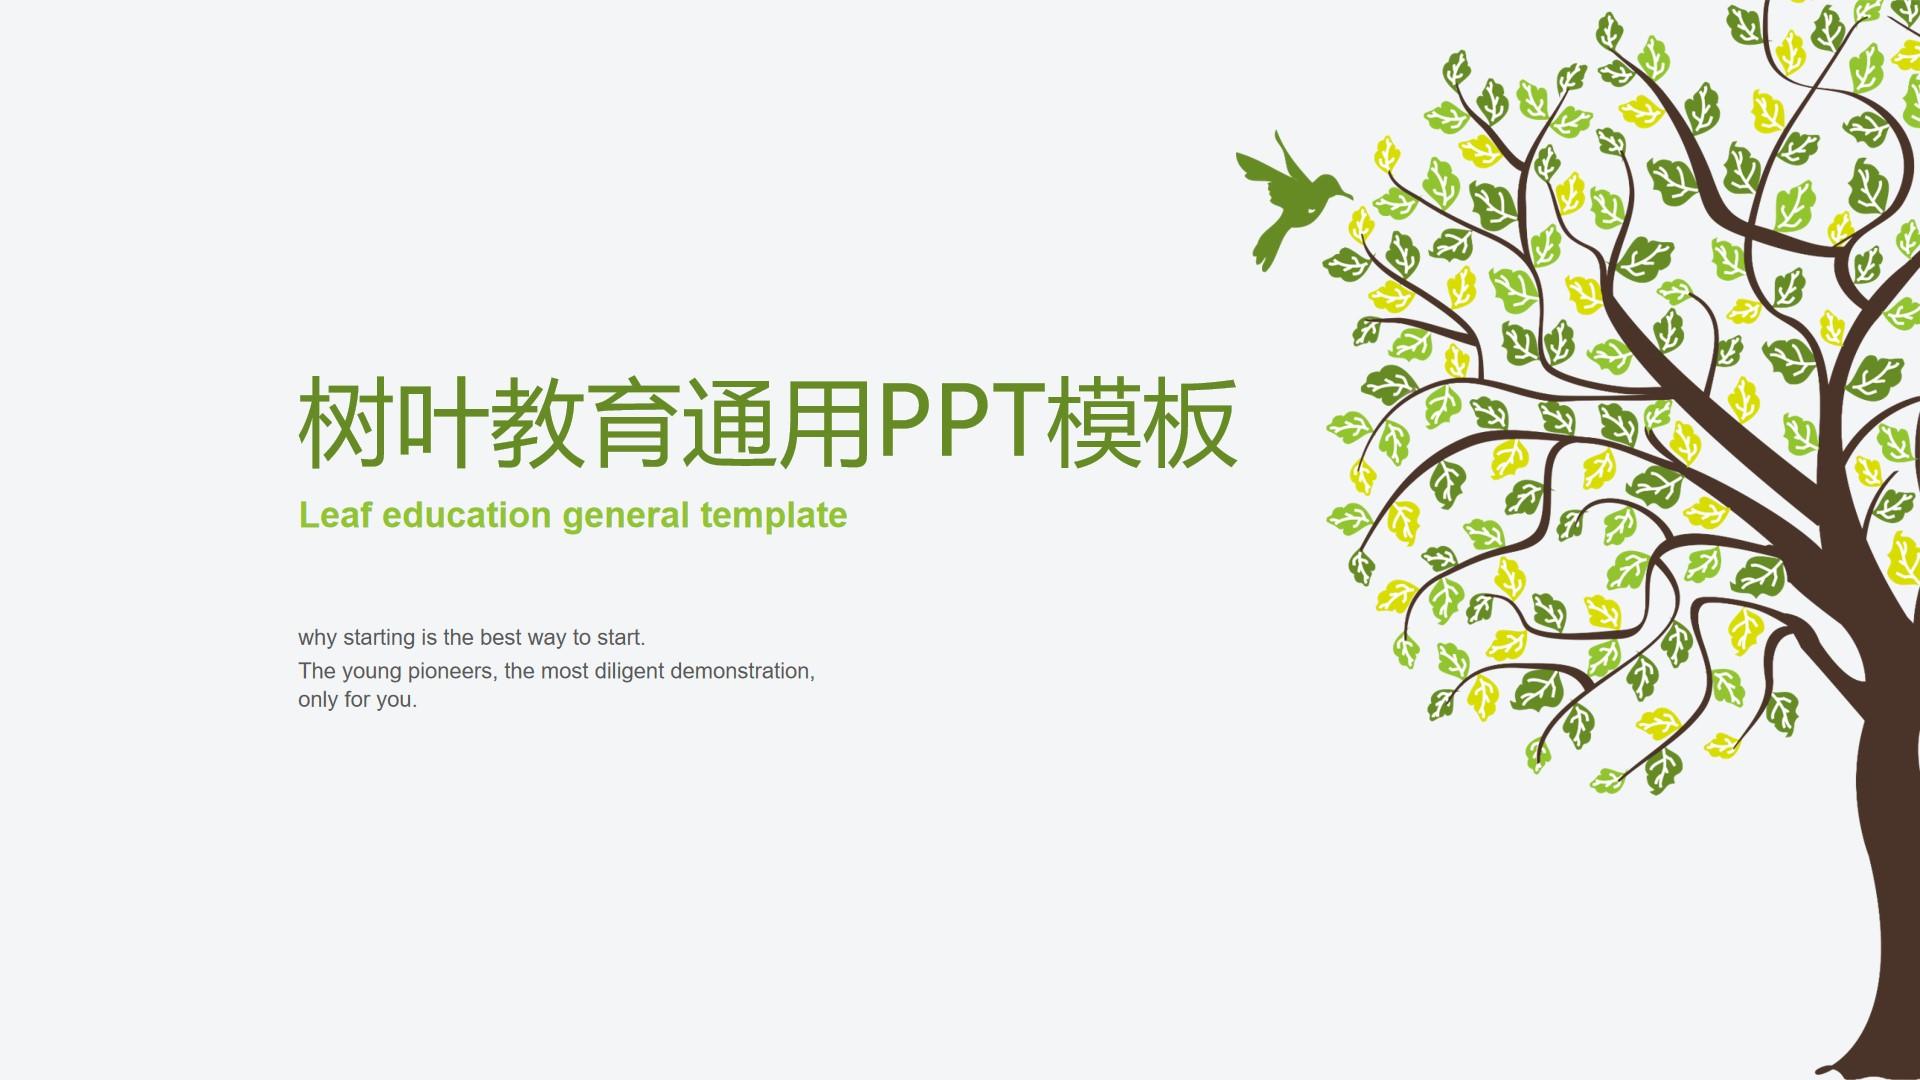 教育教学绿色白色素雅标准简洁模板 leaf ppt education 通用云素材PPT模板1672649578658